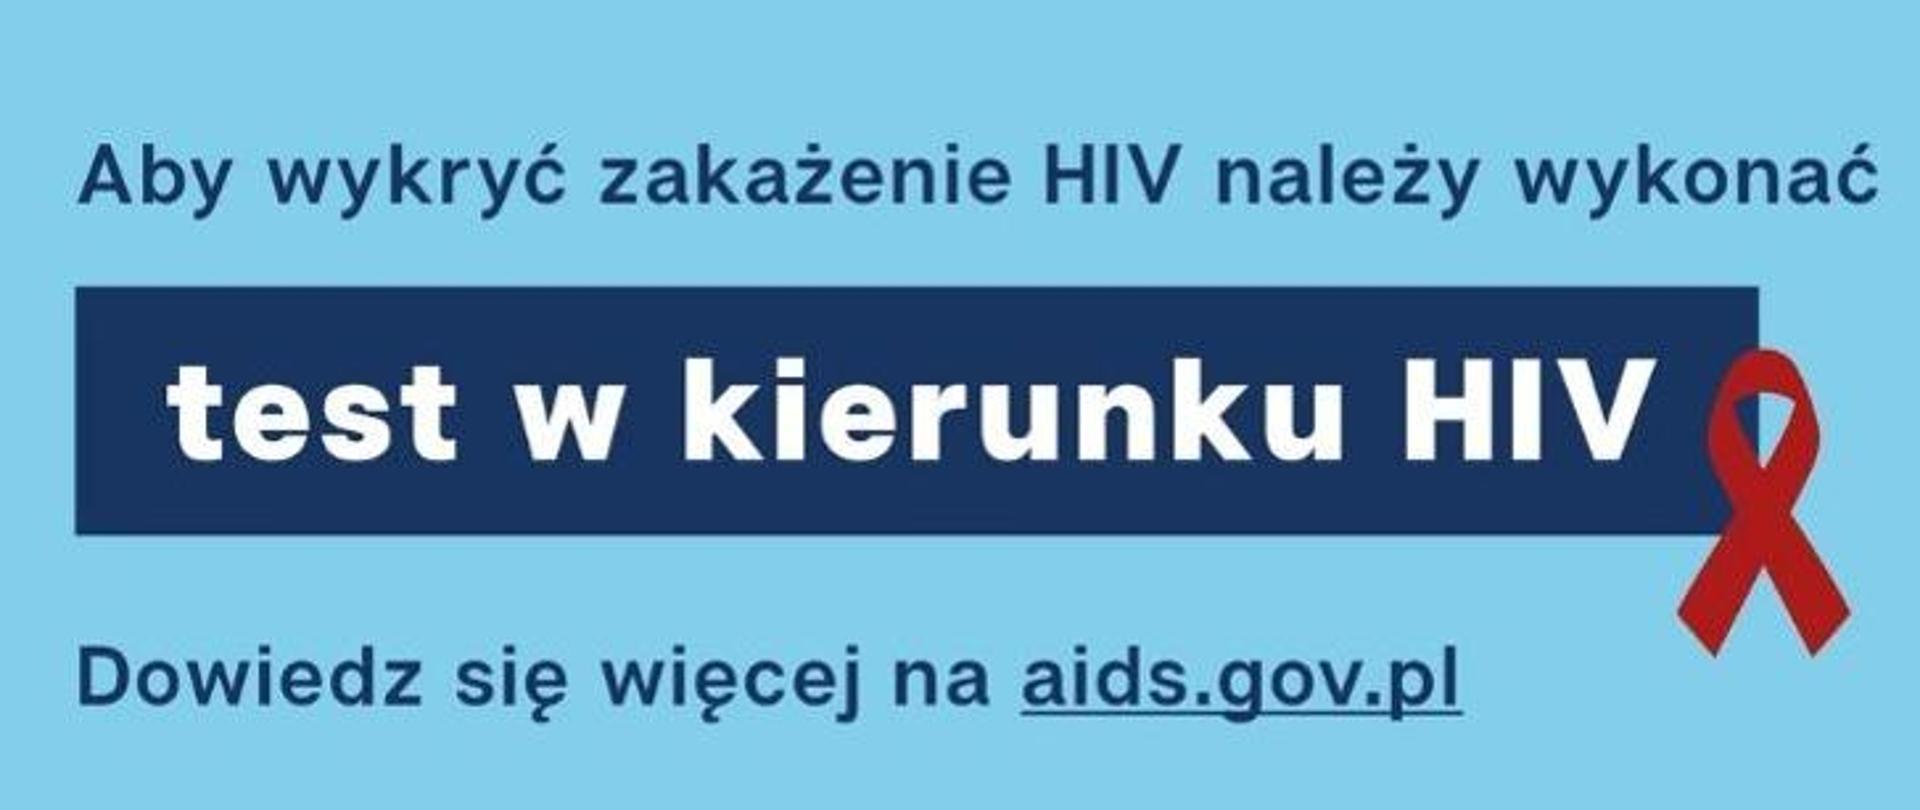 Dowiedz się więcej na aids.gov.pl